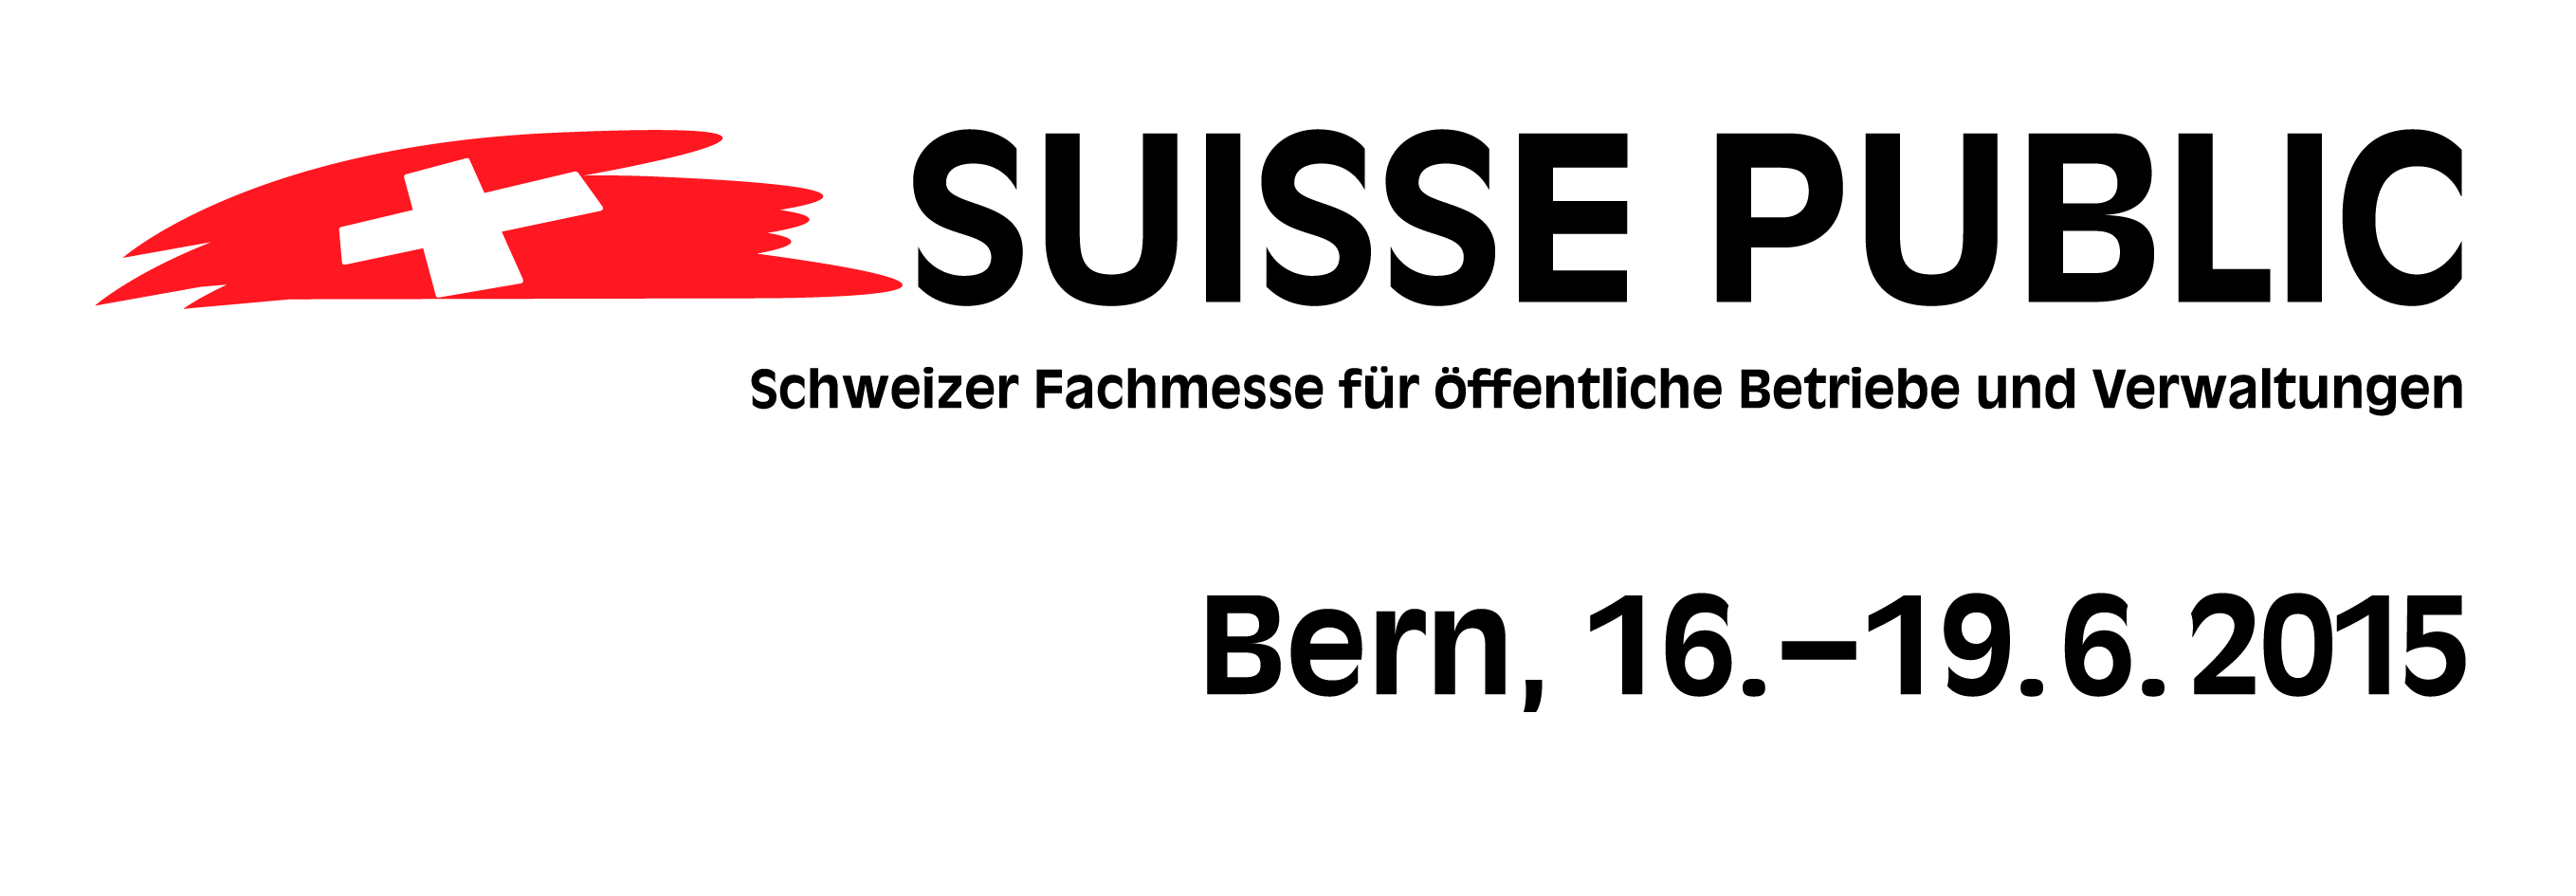 Logo Suisse Public 2015